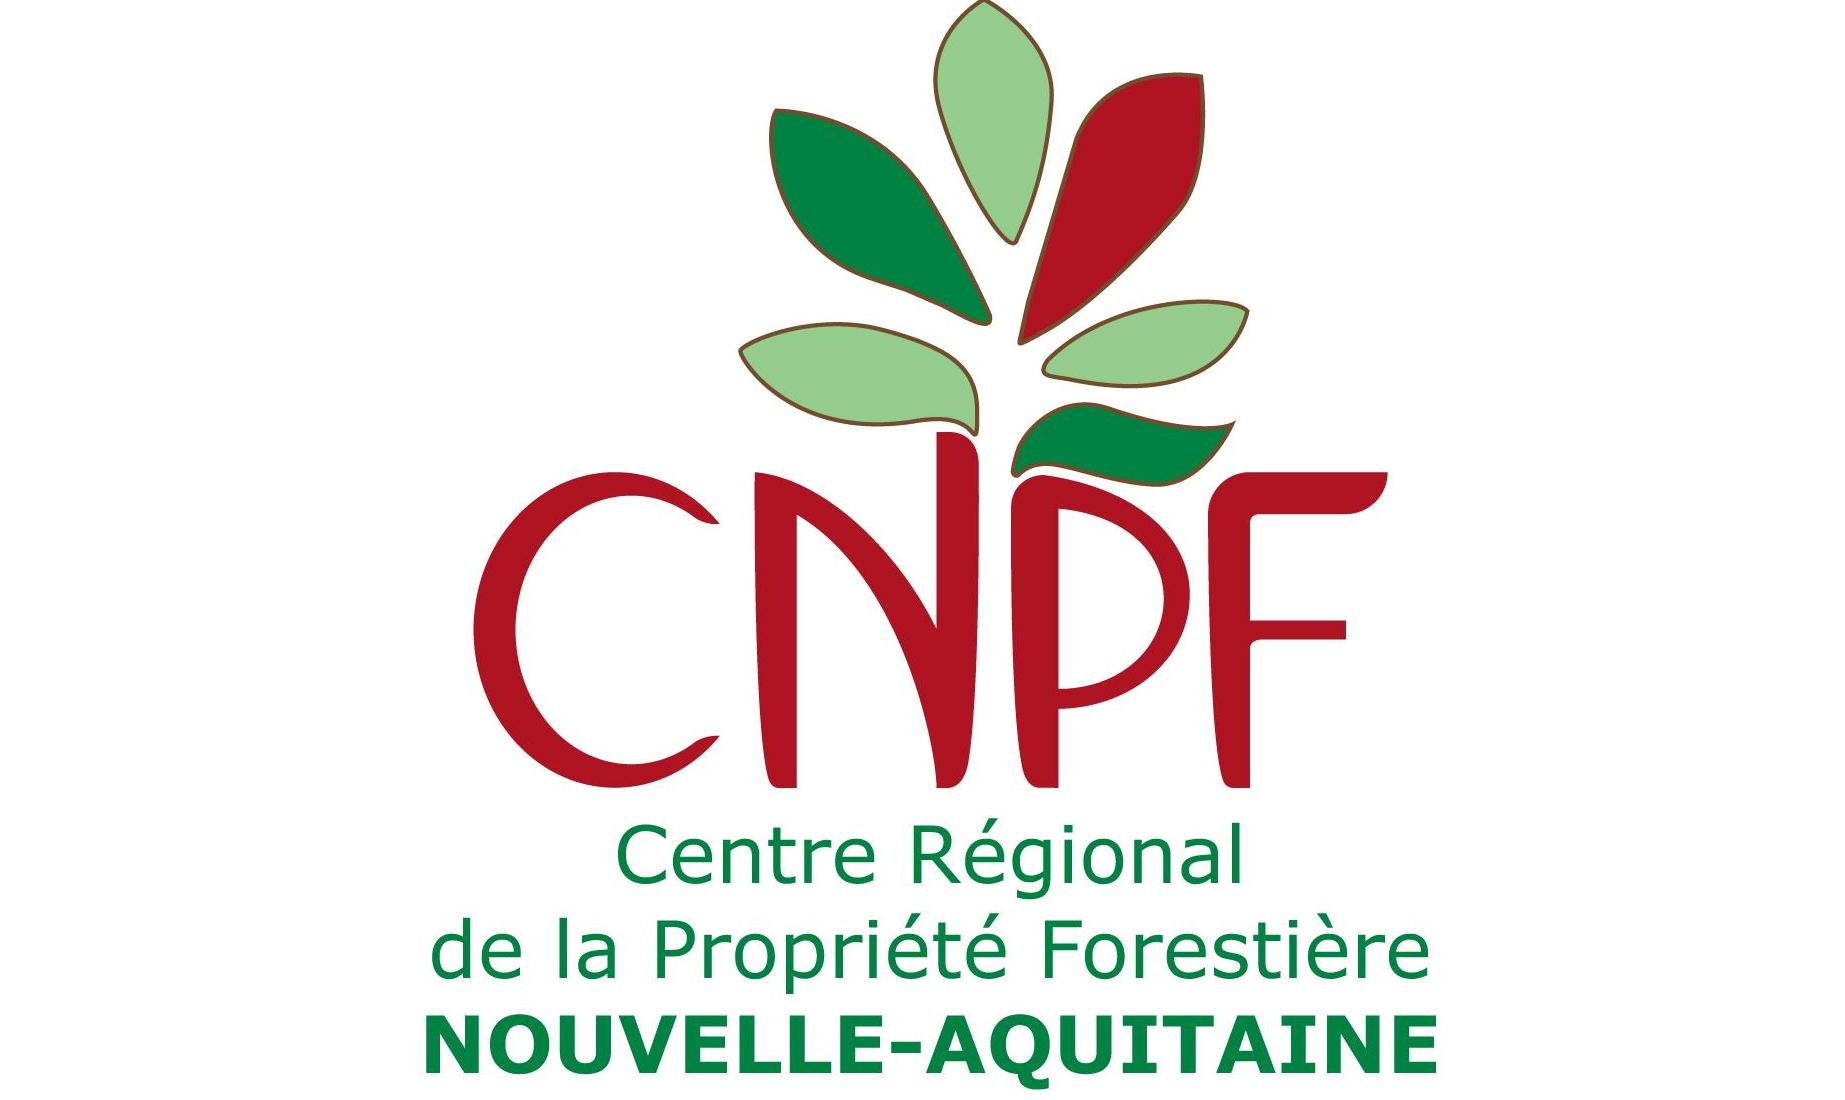 Centre Régional de la Propriété Forestière